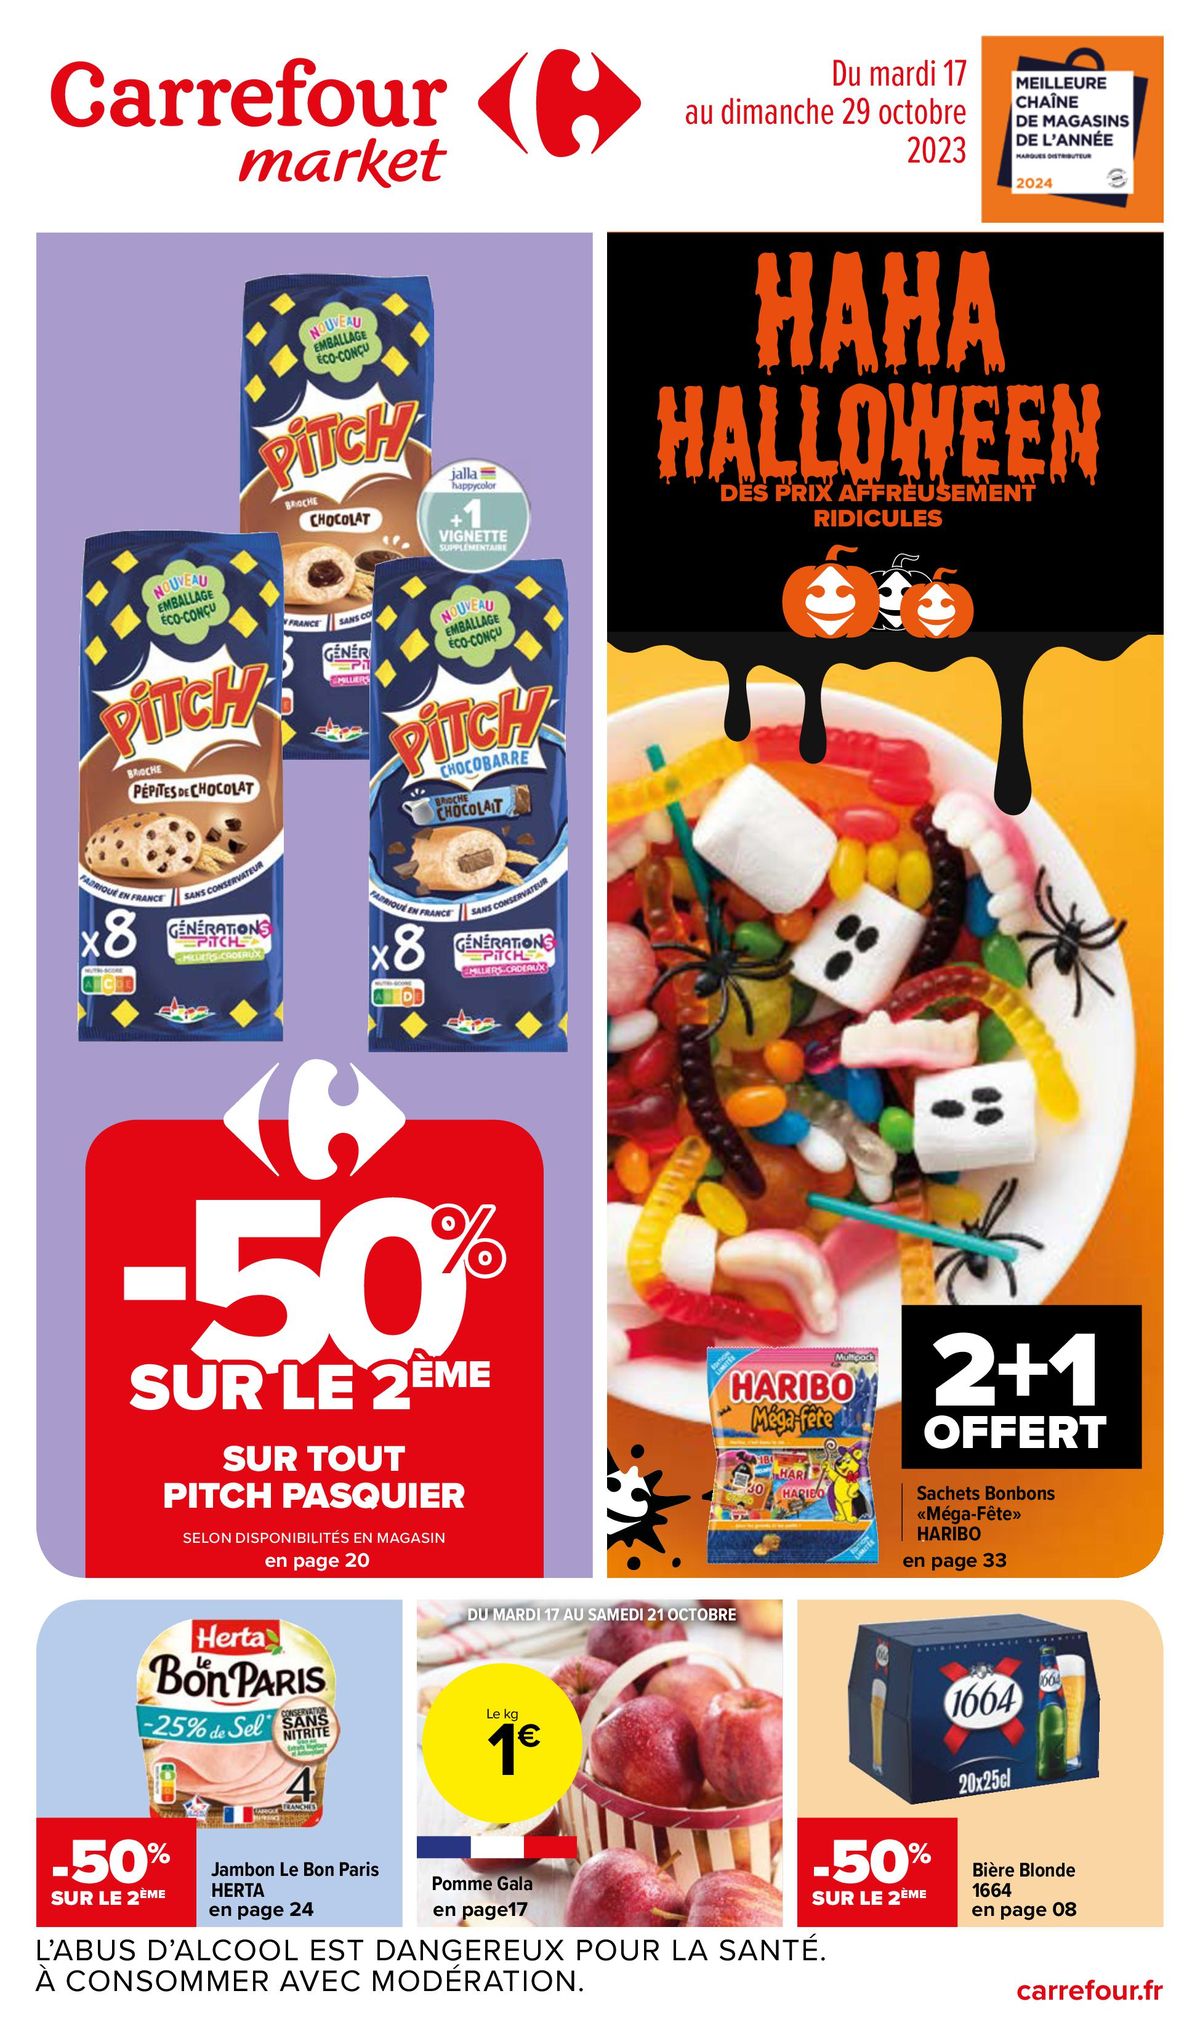 Catalogue Ha Ha Halloween, des prix affreusement ridicules, page 00001